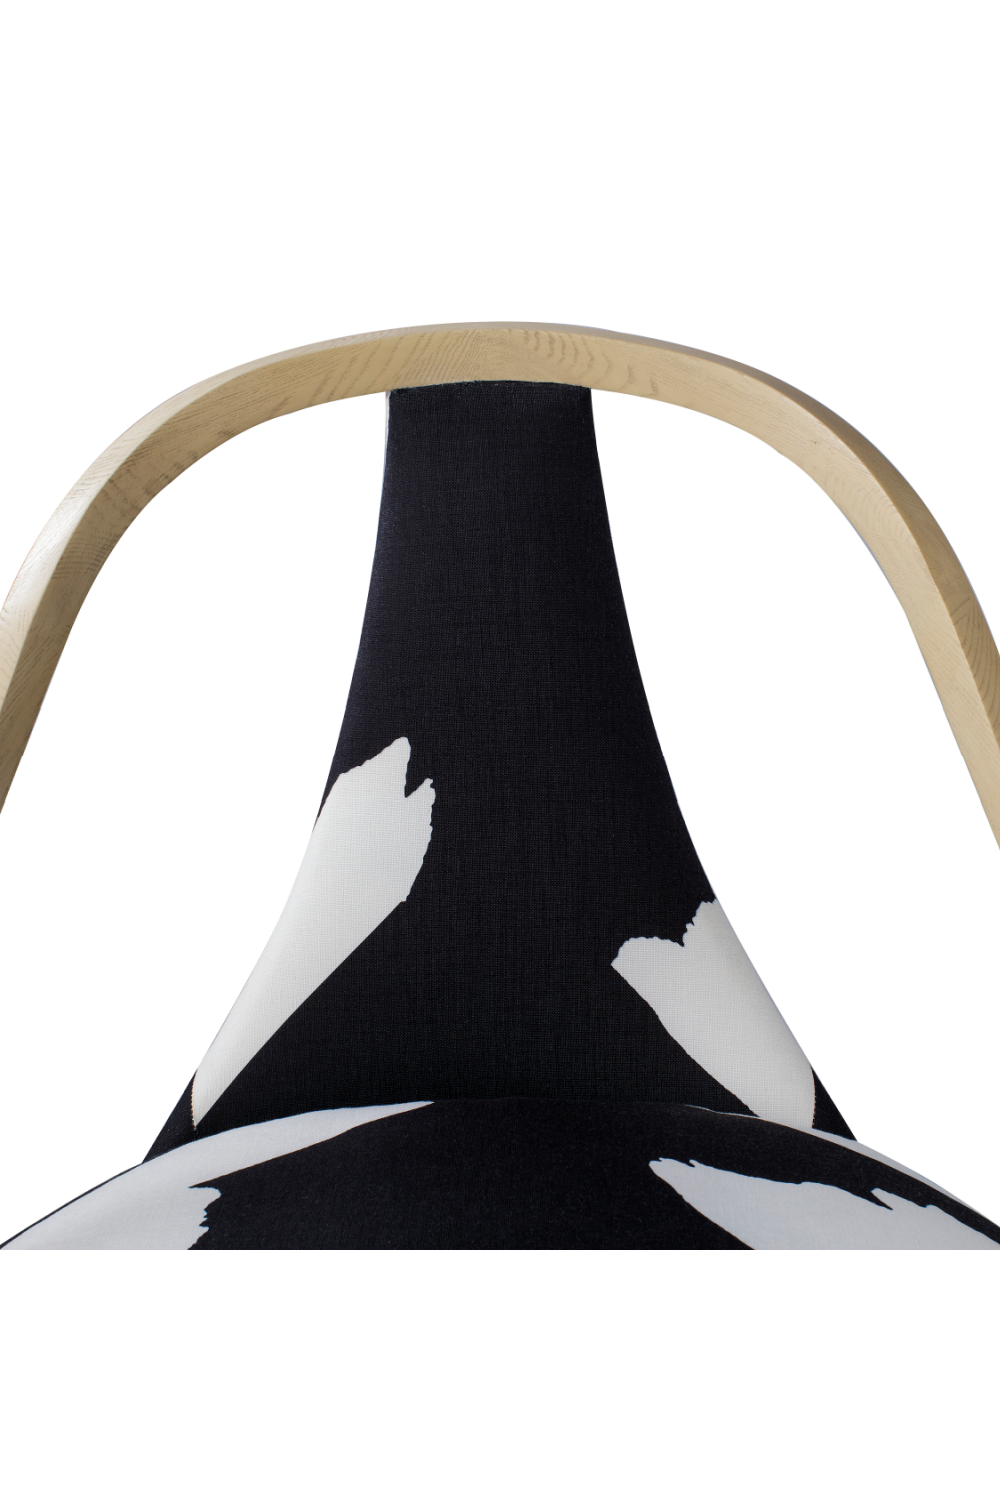 Linen Upholstery Fluted Back Chair | Andrew Martin Ava | OROA